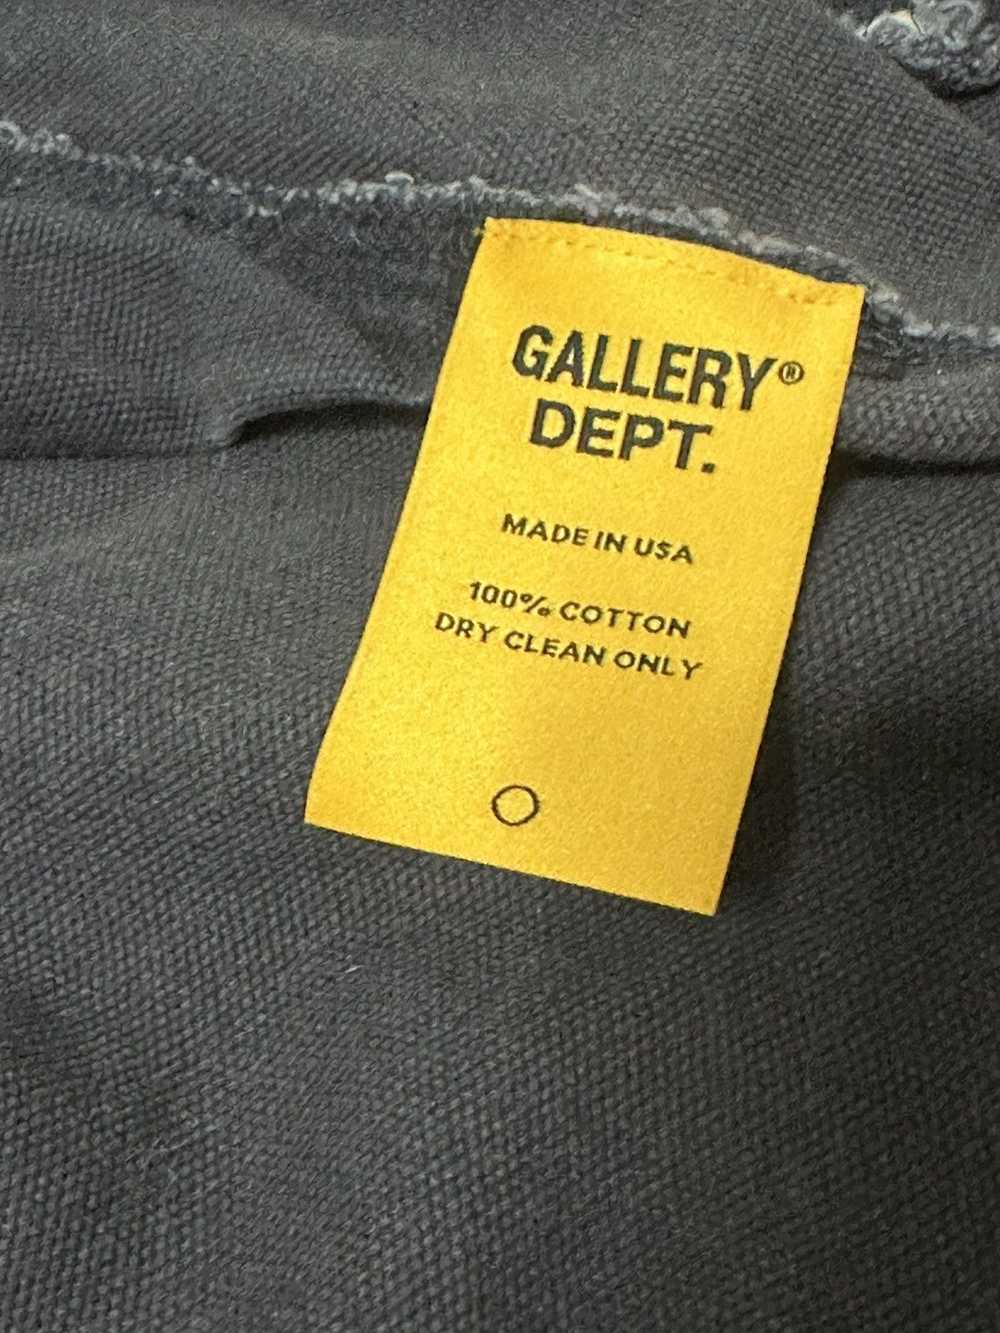 Gallery Dept. Gallery Dept Mechanic Jacket - image 8